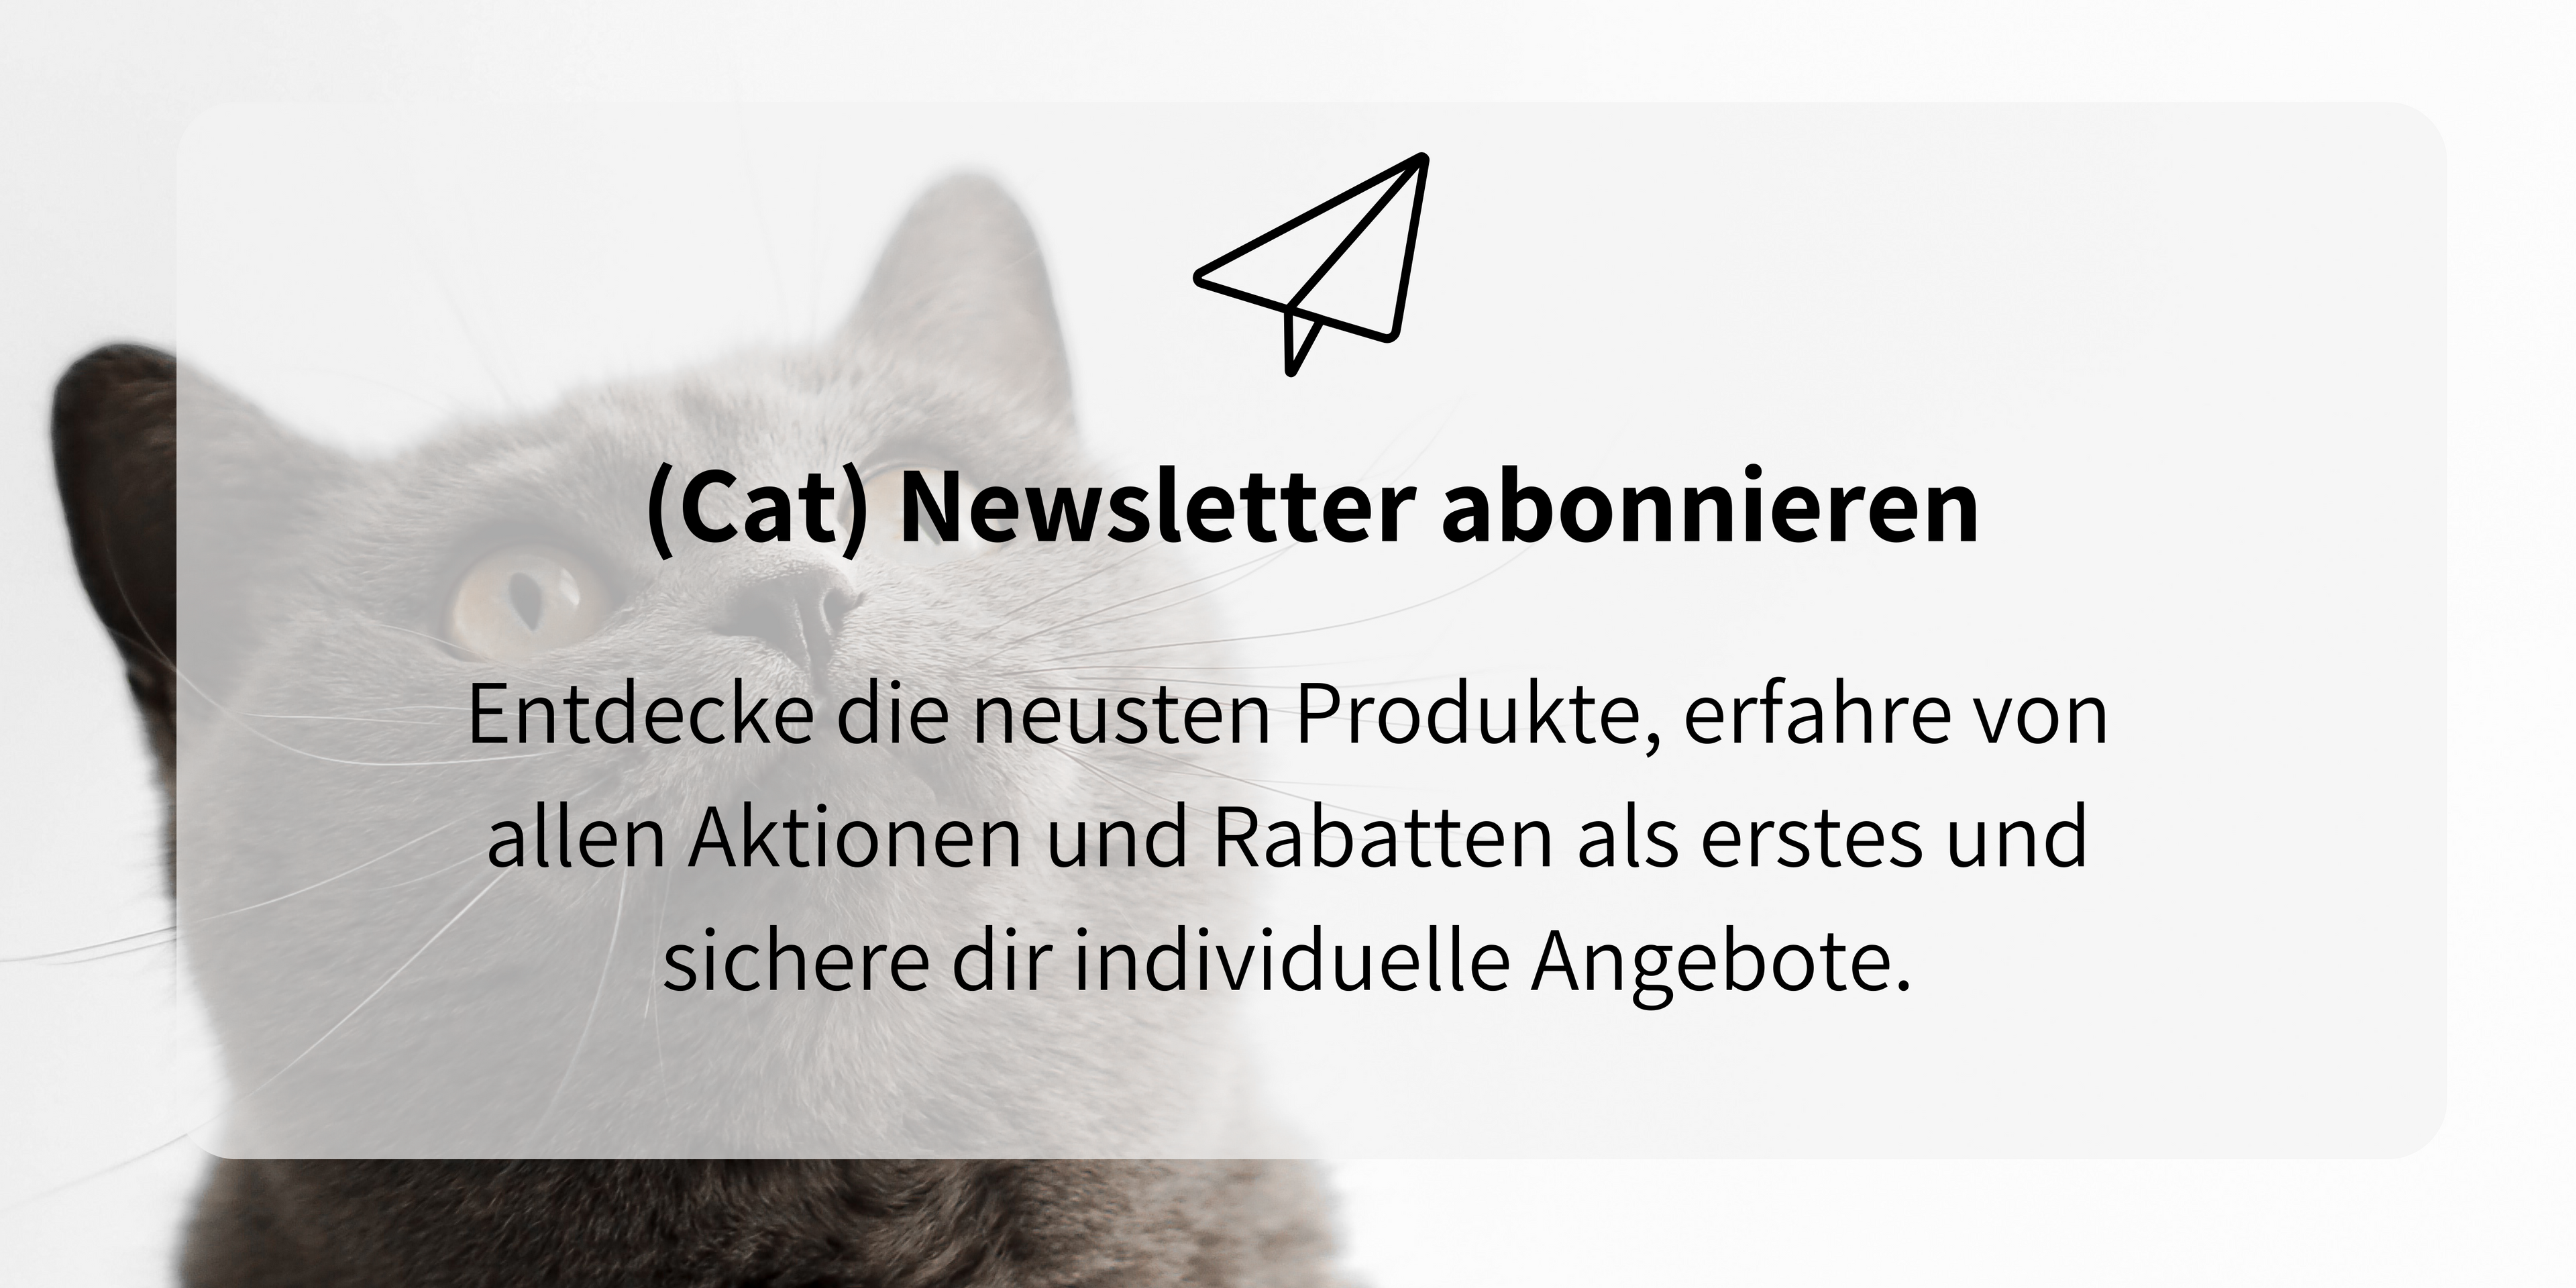 Newsletter Anmeldung für schöne Katzenprodukte, Infos zu Aktionen und Rabatten bei Minty & Marla.